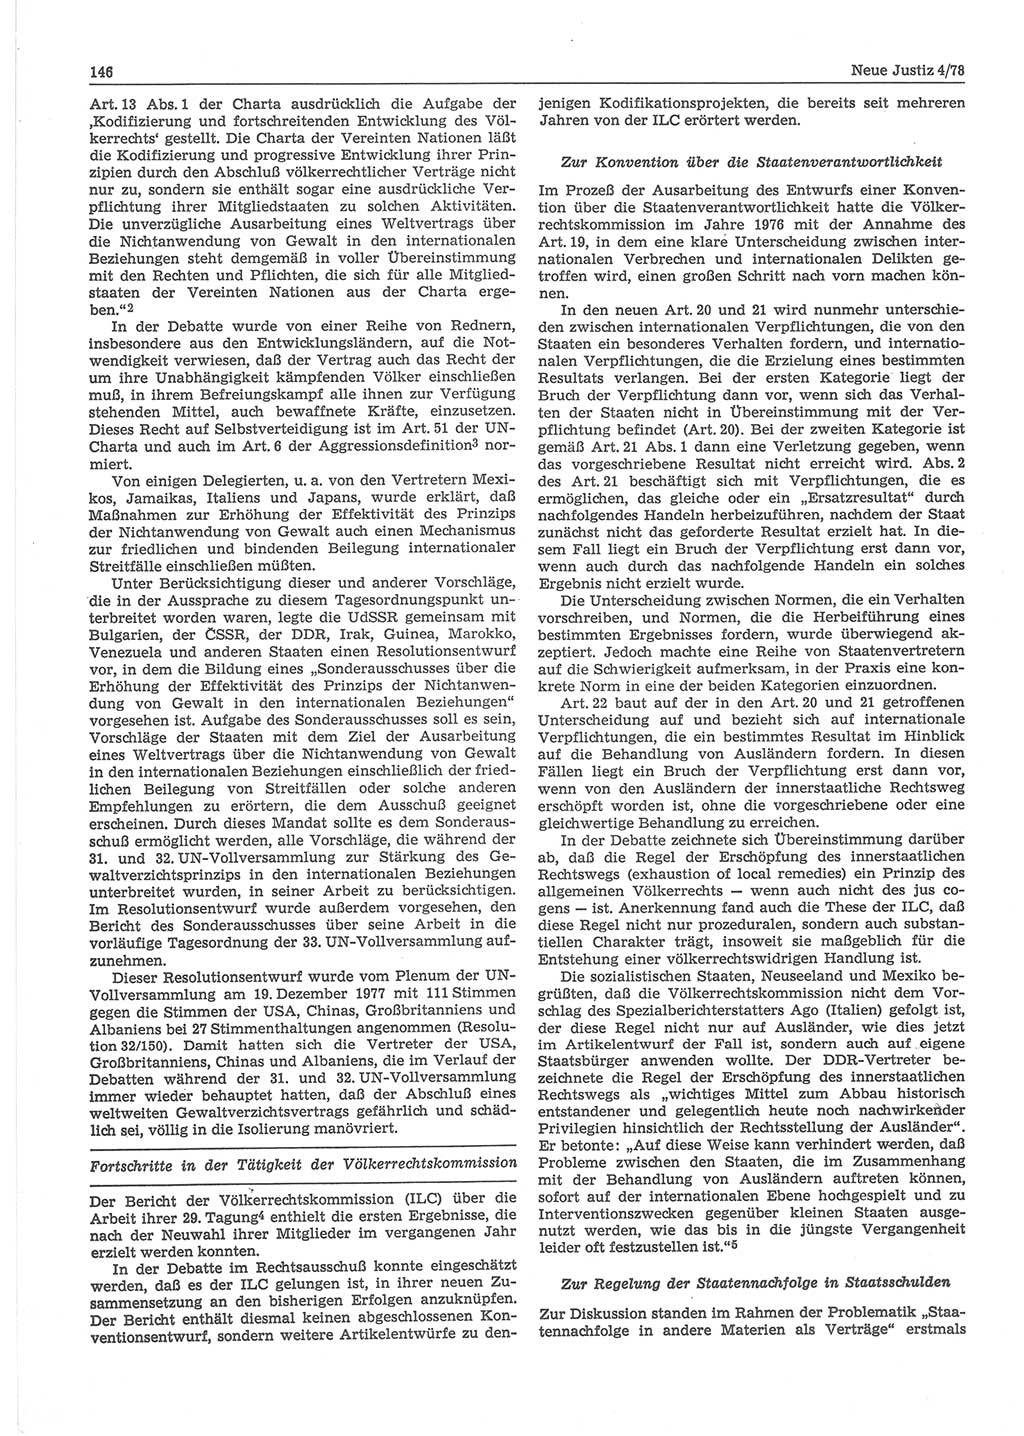 Neue Justiz (NJ), Zeitschrift für sozialistisches Recht und Gesetzlichkeit [Deutsche Demokratische Republik (DDR)], 32. Jahrgang 1978, Seite 146 (NJ DDR 1978, S. 146)